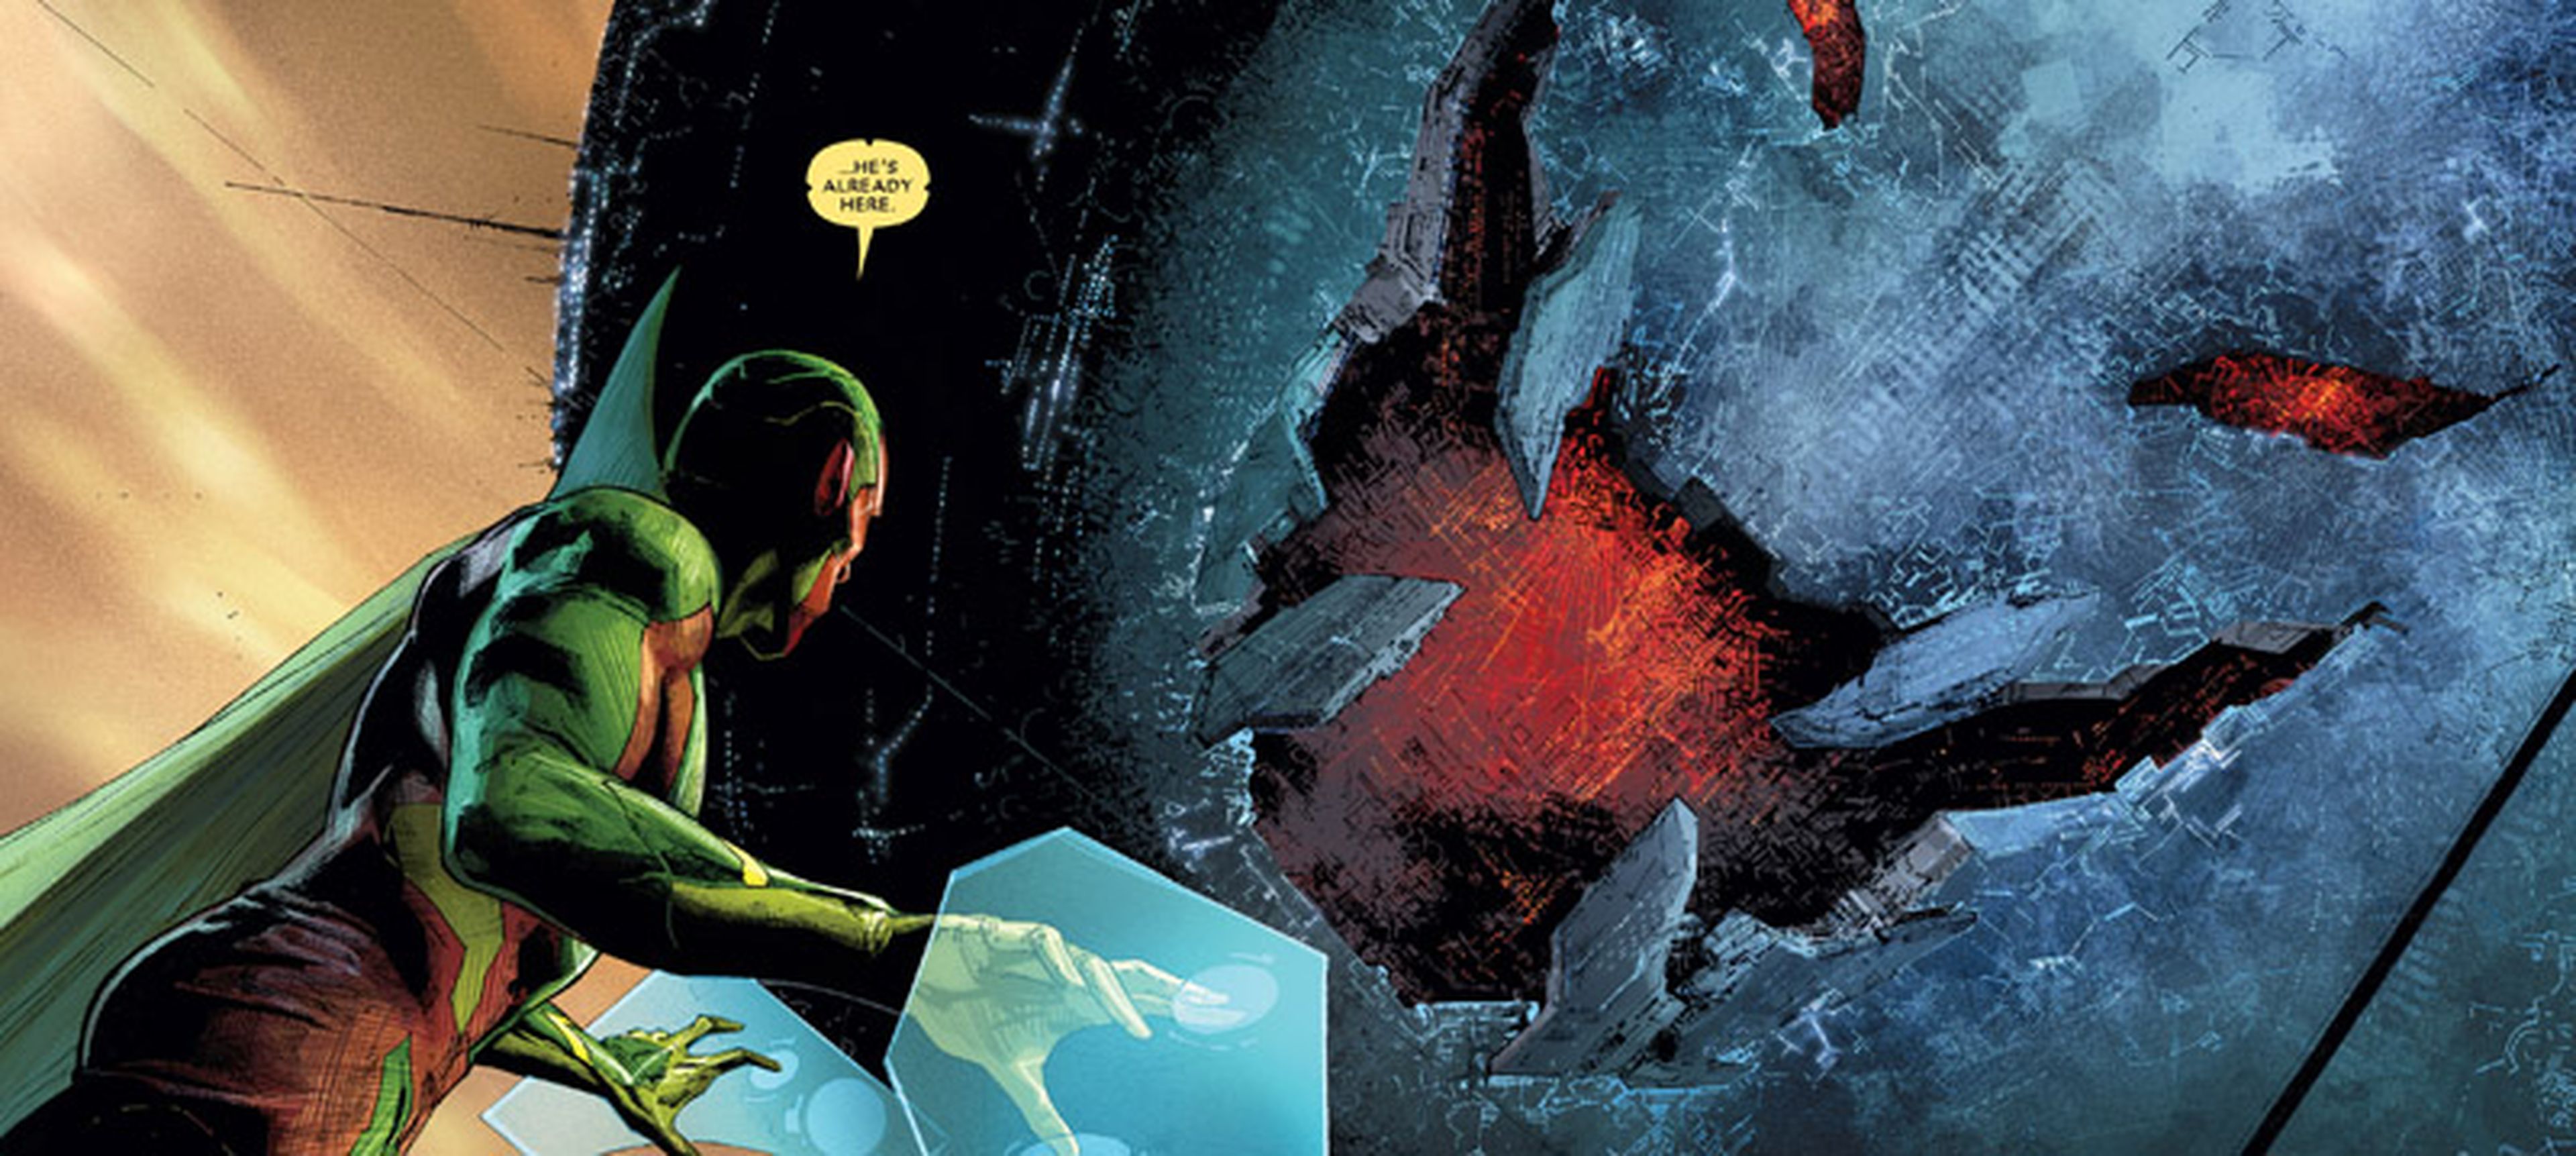 Los Vengadores: La cólera de Ultrón. Reseña de la última novela gráfica de Marvel